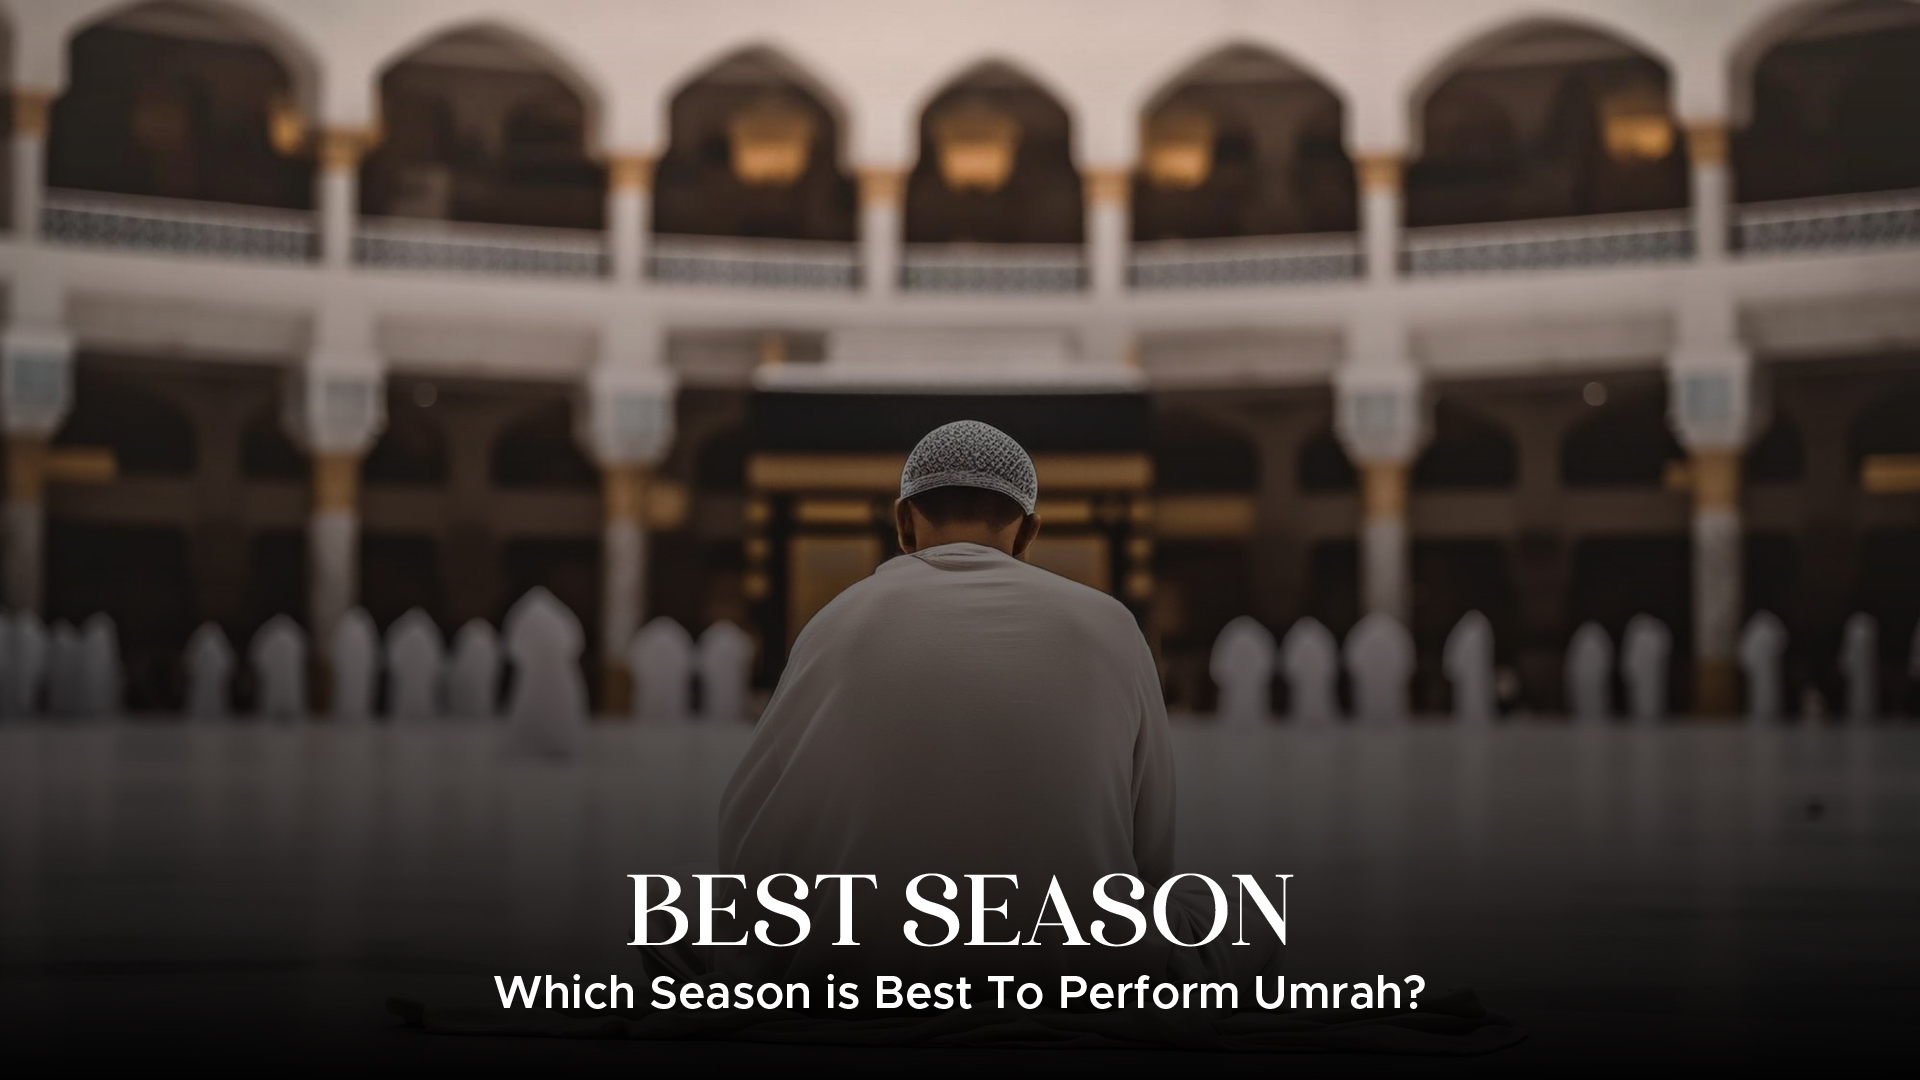 Great Season To Perform Umrah